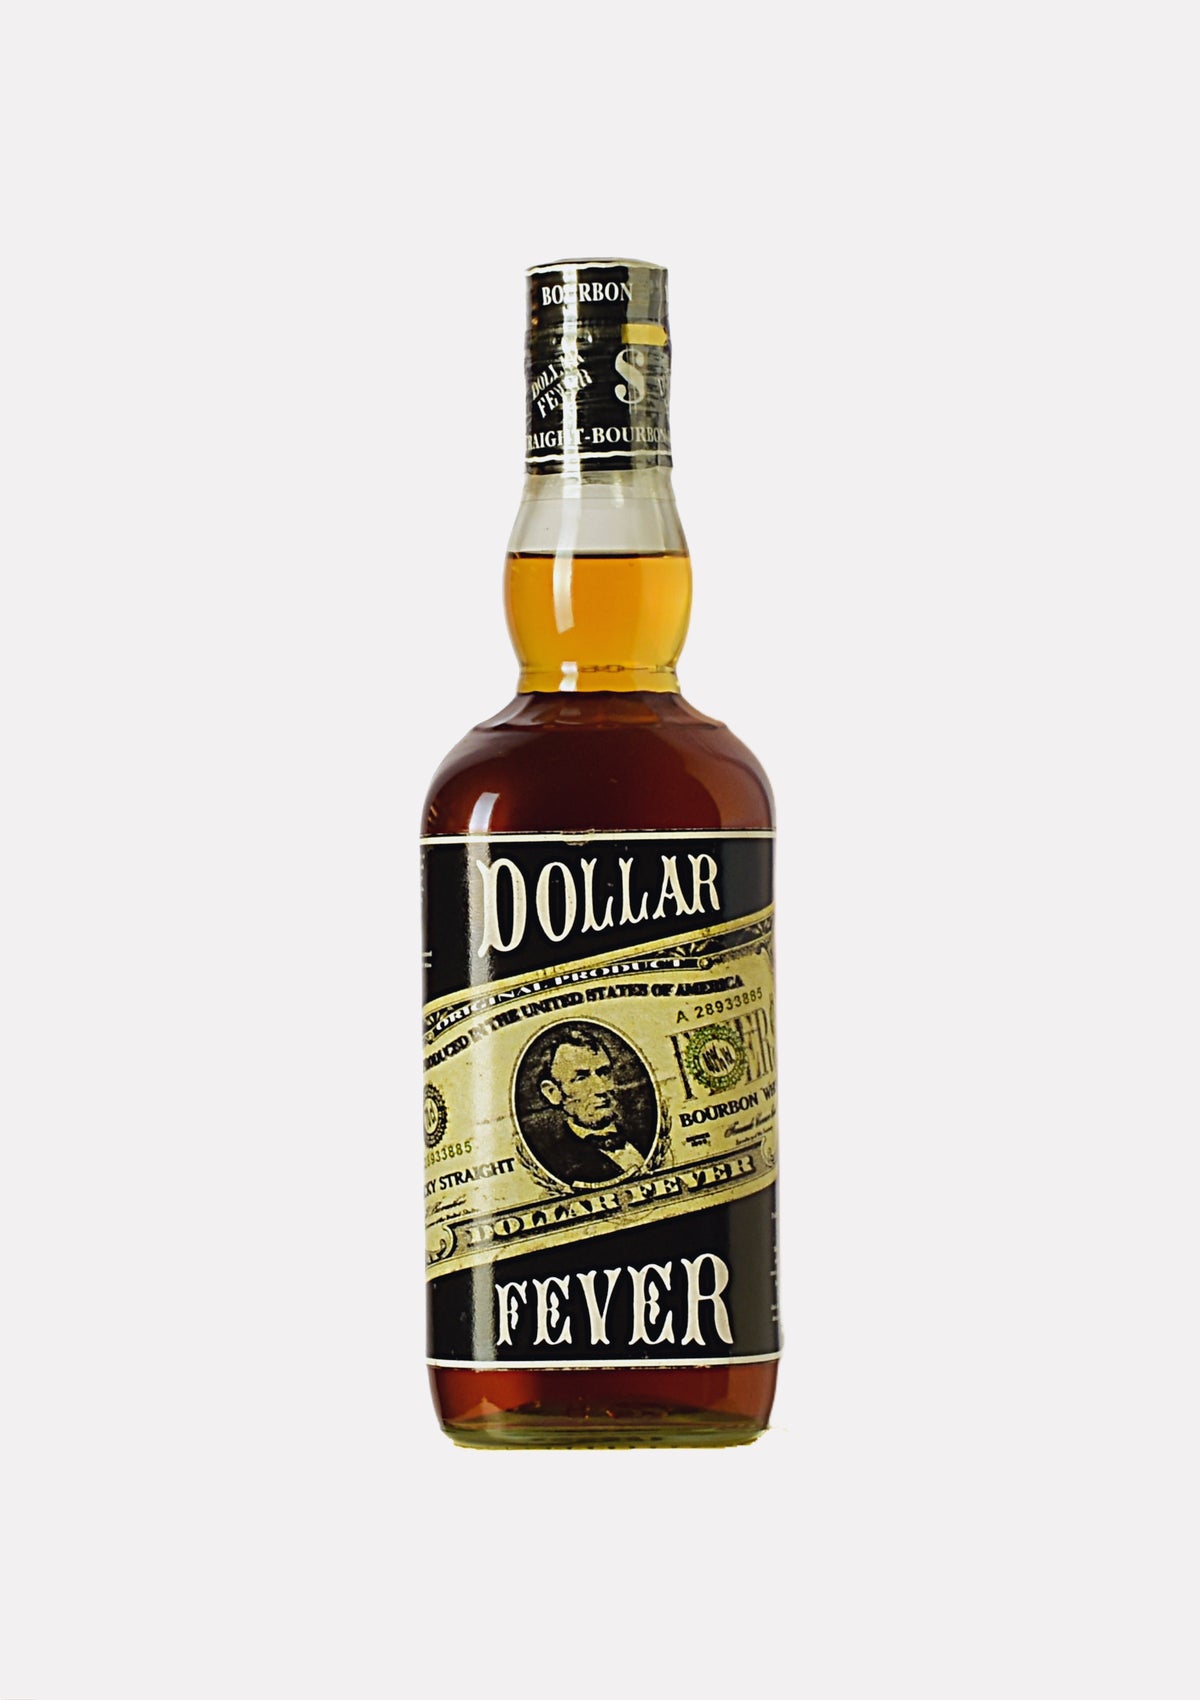 Dollar Fever Kentucky Straight Bourbon Whiskey